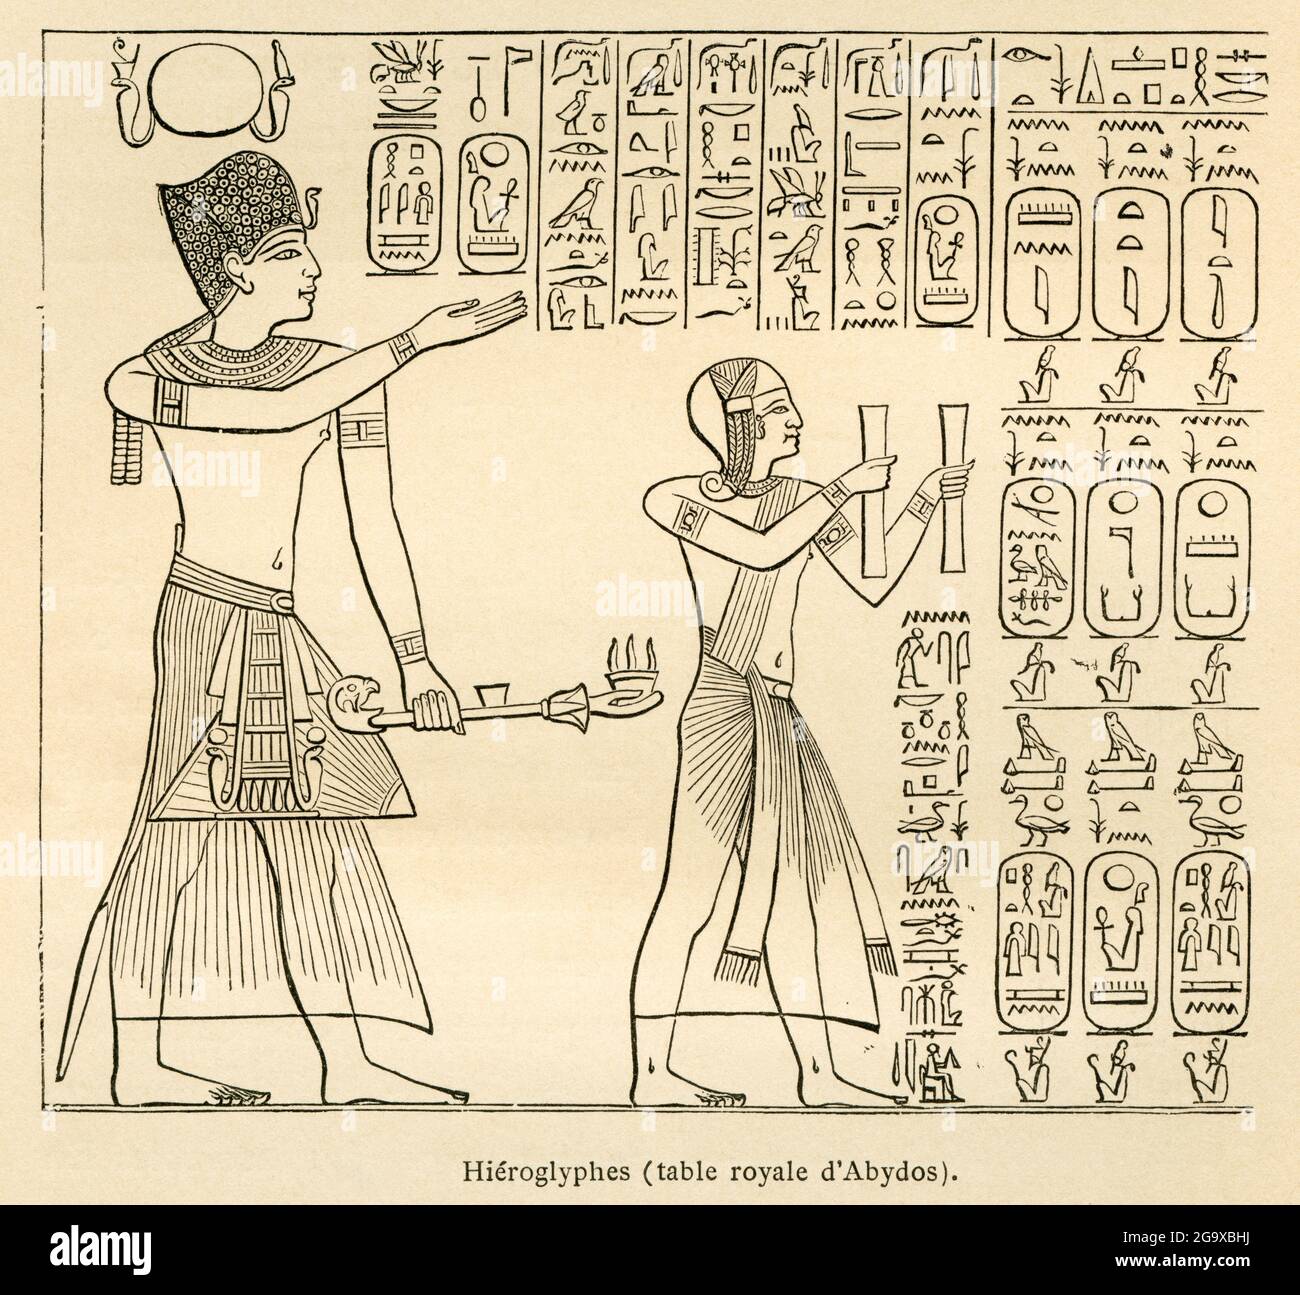 Le monde antique, l'Égypte, les hiéroglyphes égyptiens, les hiéroglyphes d'hélicoptère, LES DROITS supplémentaires-AUTORISATION-INFO-NON-DISPONIBLE Banque D'Images